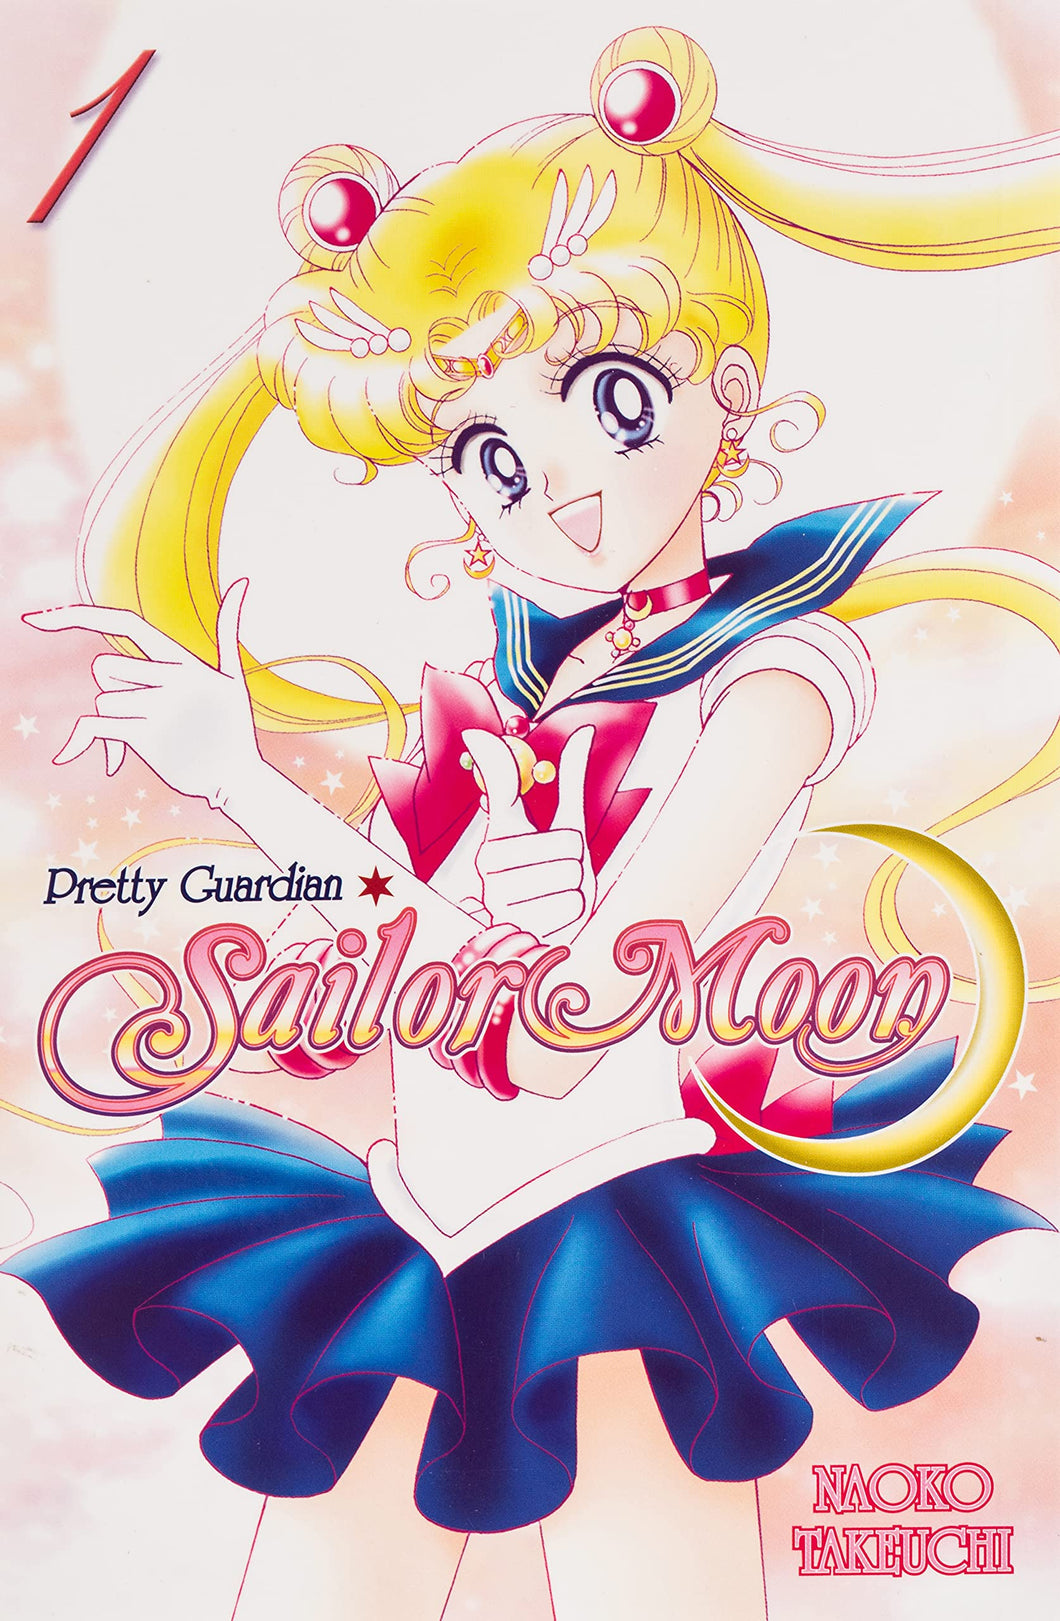 Sailor Moon Volume 1